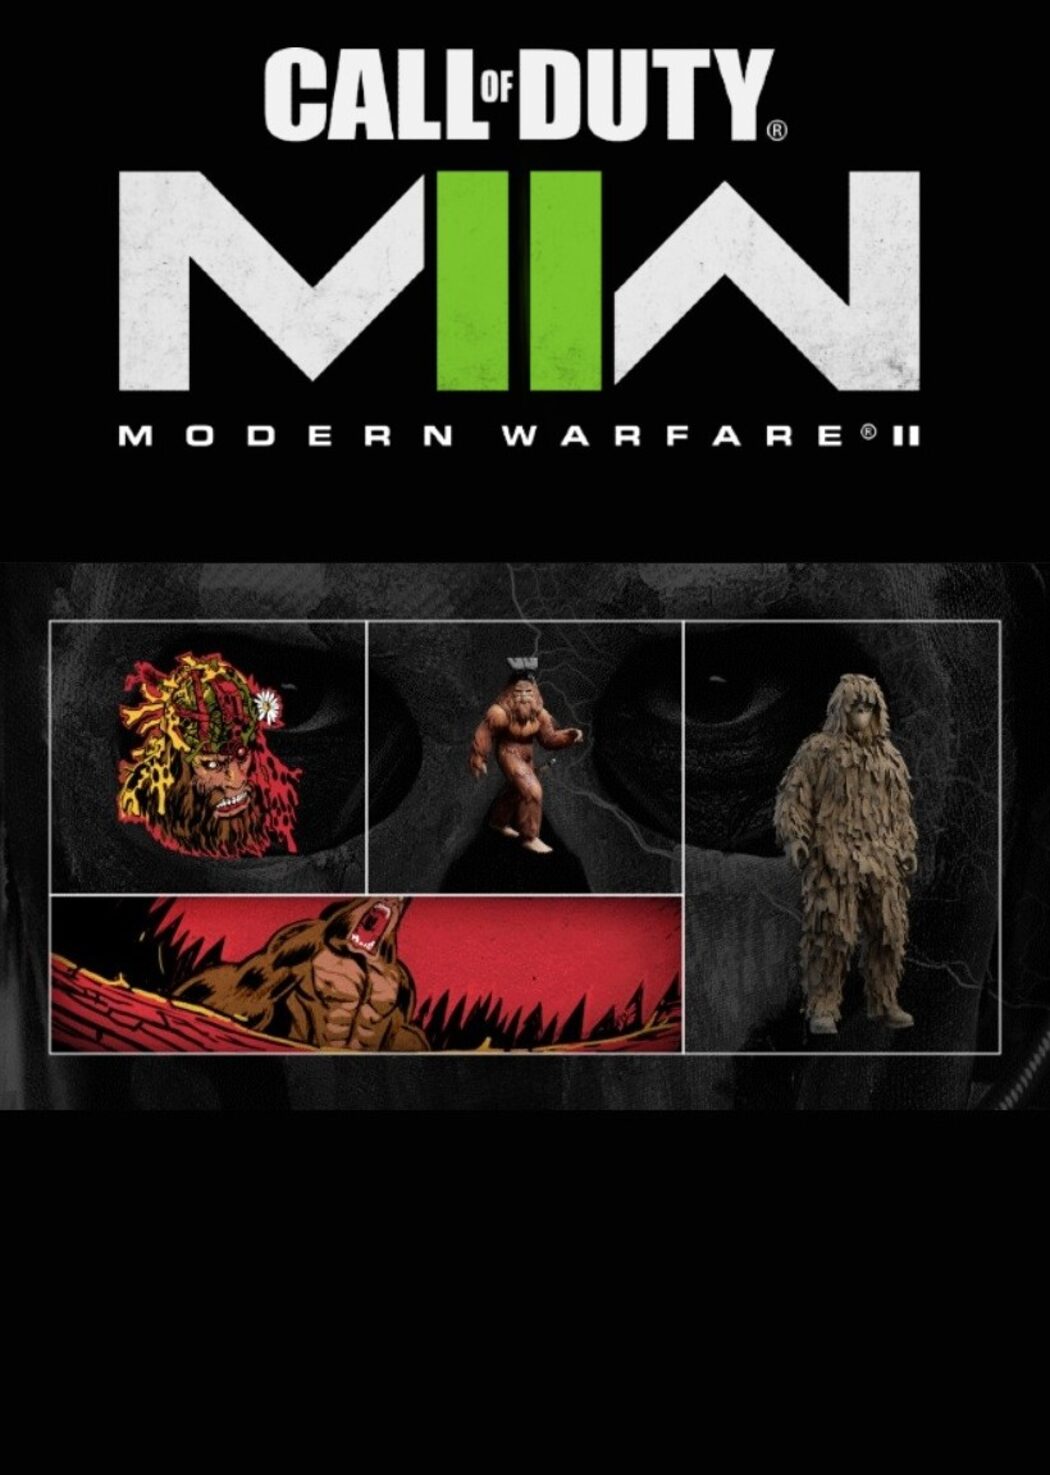 Buy Call of Duty: Modern Warfare III 15min Double XP (PC, PS5, PS4